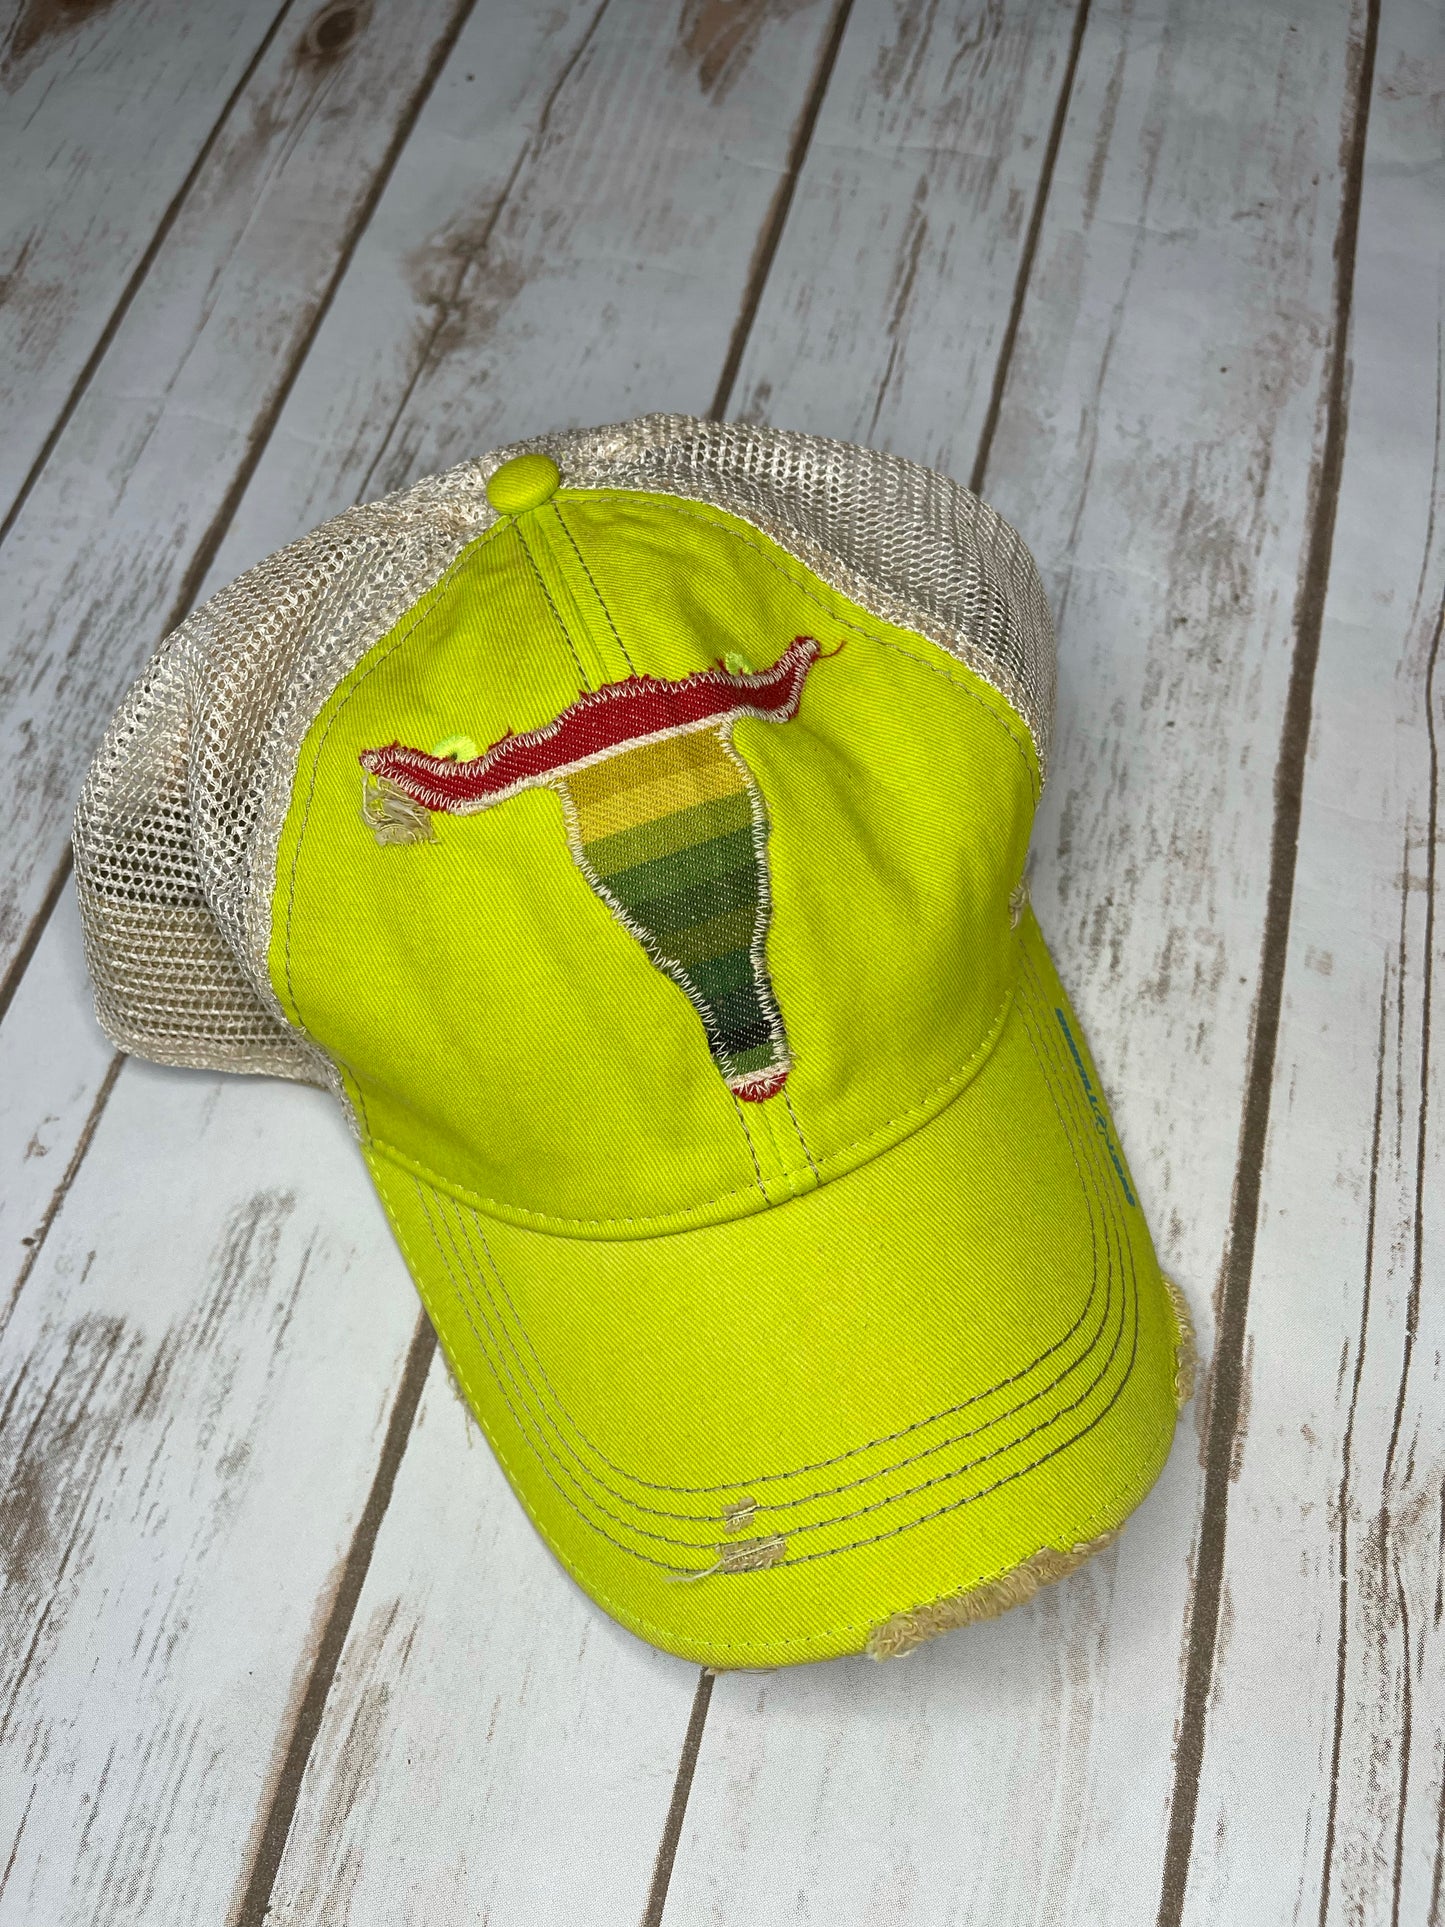 Guacamole Serape Dirty Trucker Hat